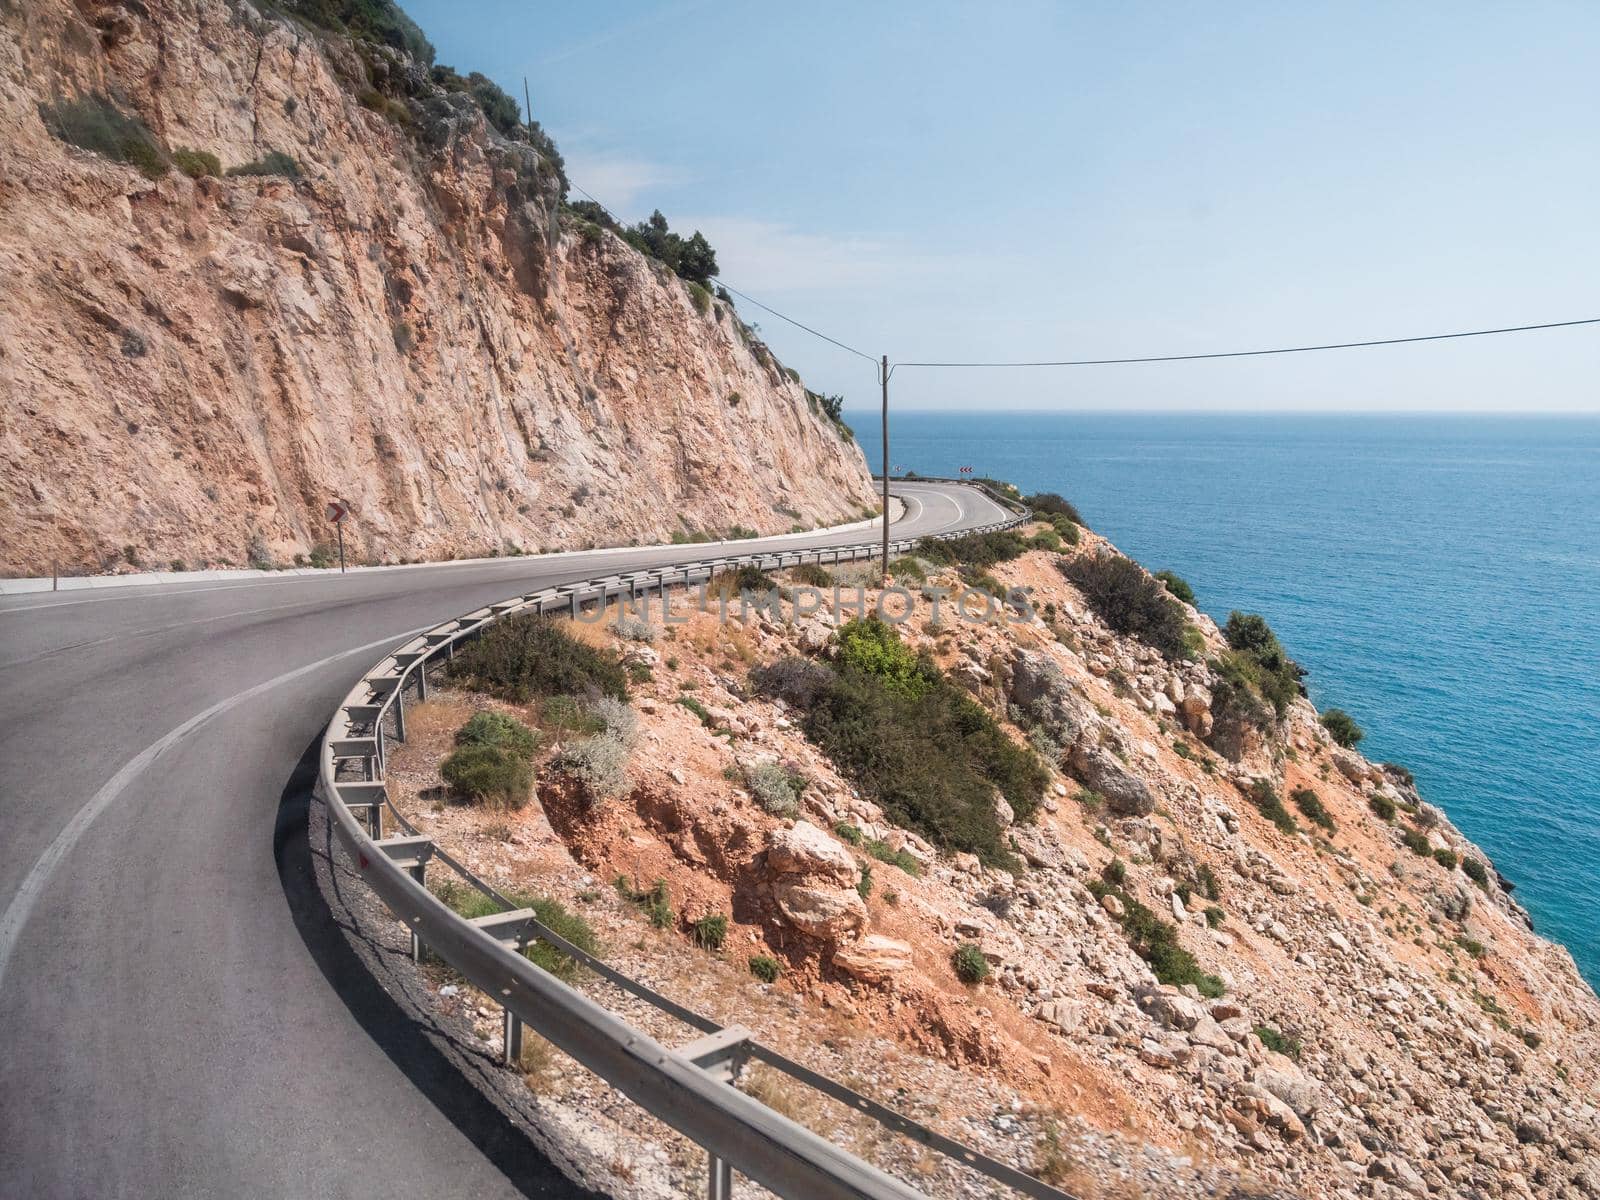 Mountain serpentine road along Mediterranean sea. Demre Finike Yolu road . Turkey. by aksenovko